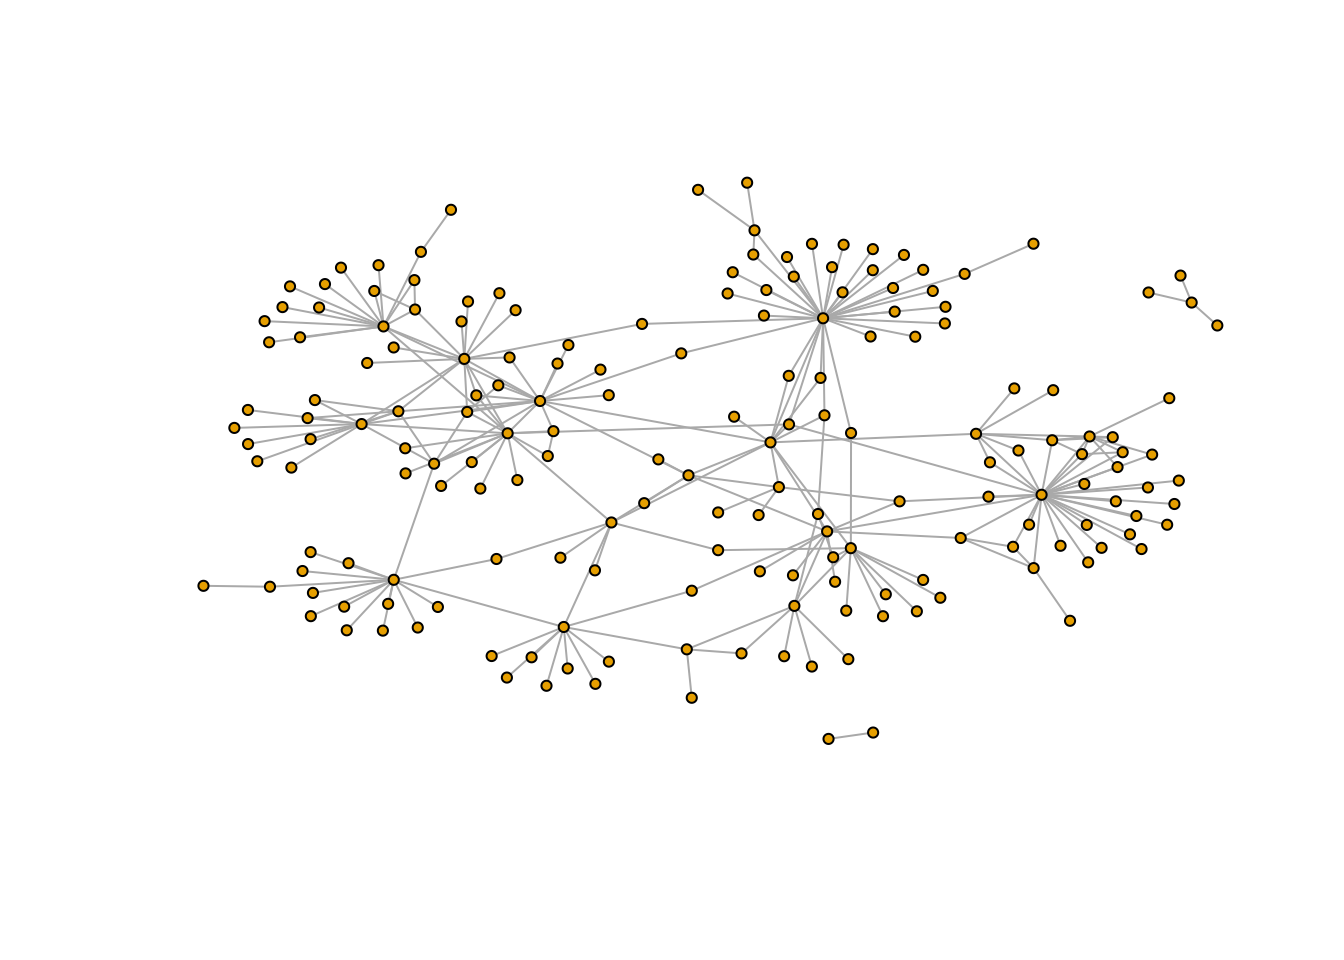 Grafo básico de la red mafiosa (mejorado).